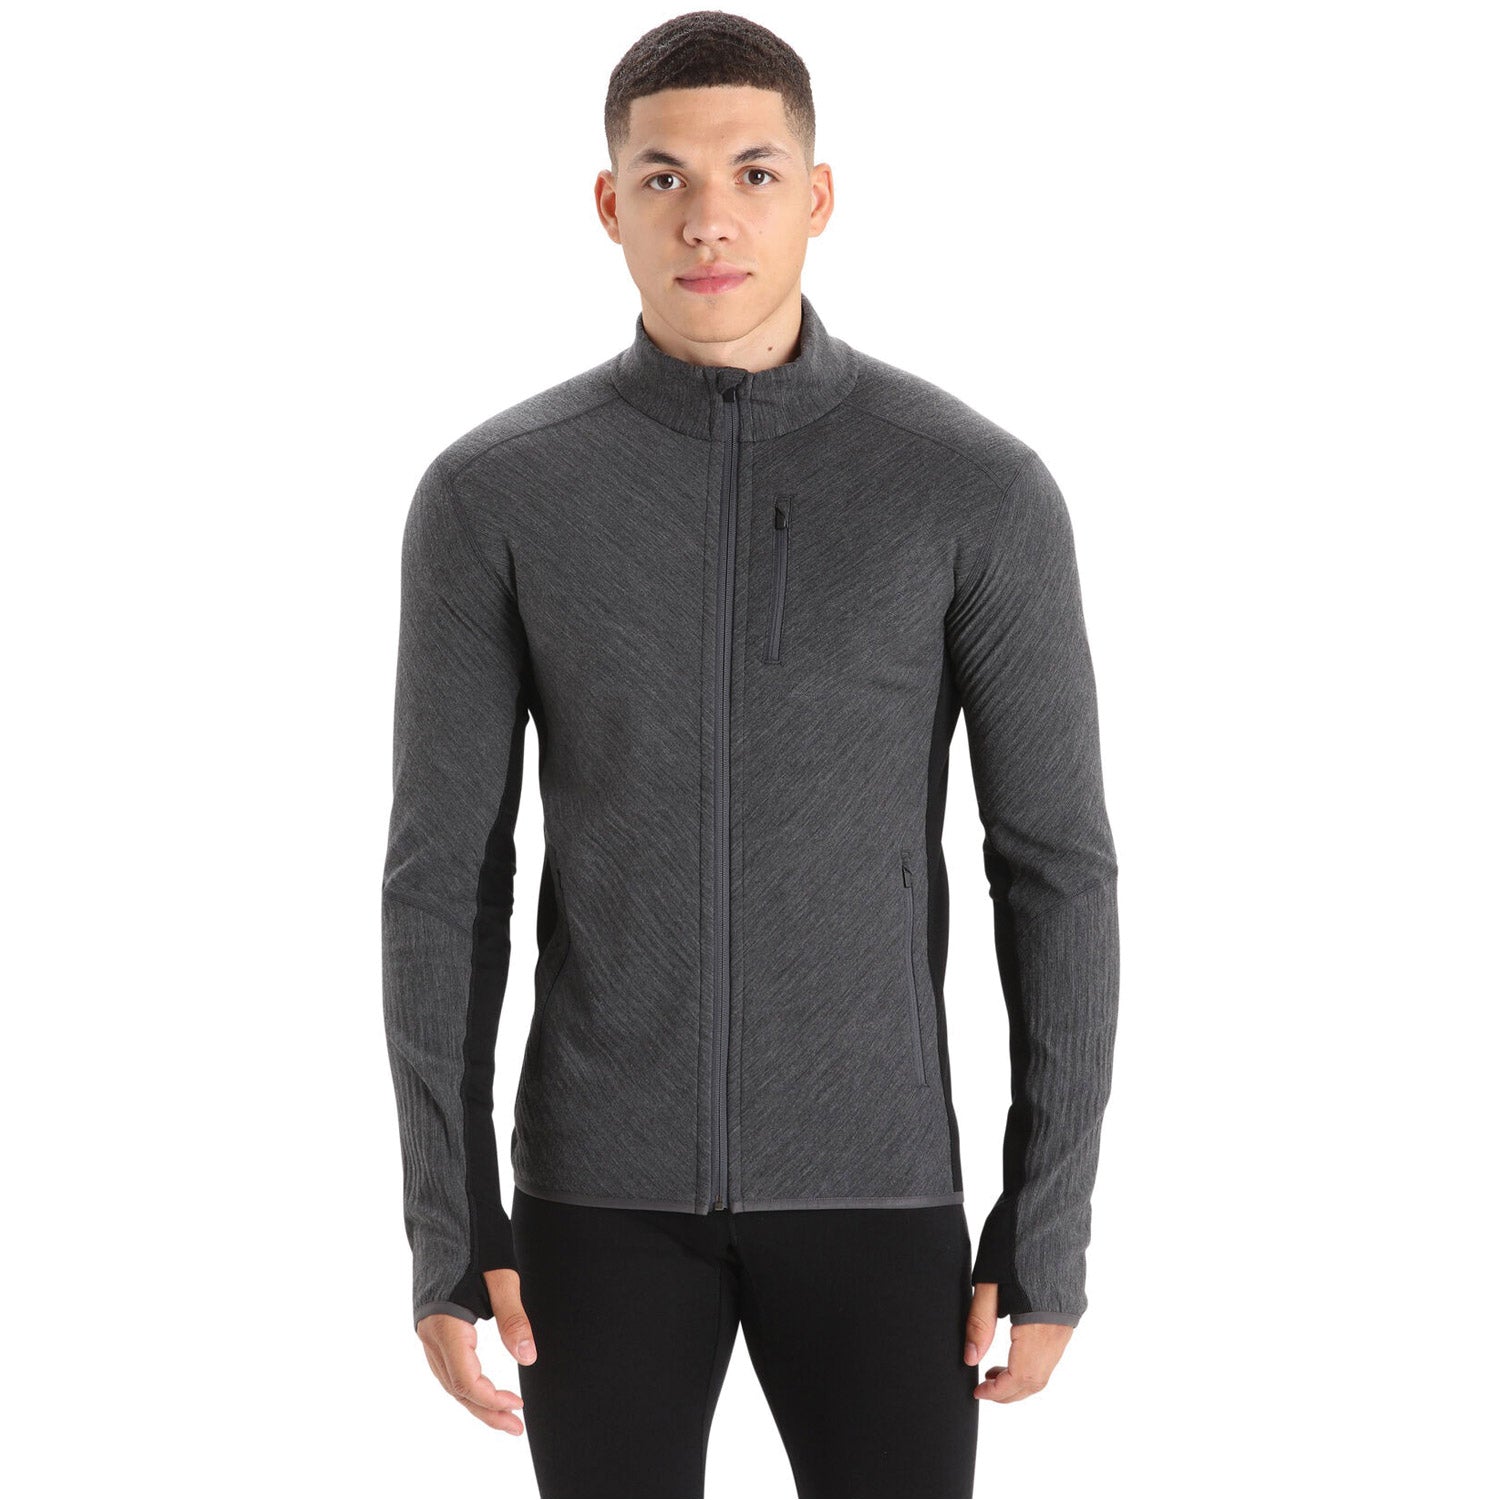 Men's RealFleece Merino Descender Long Sleeve Zip Jacket